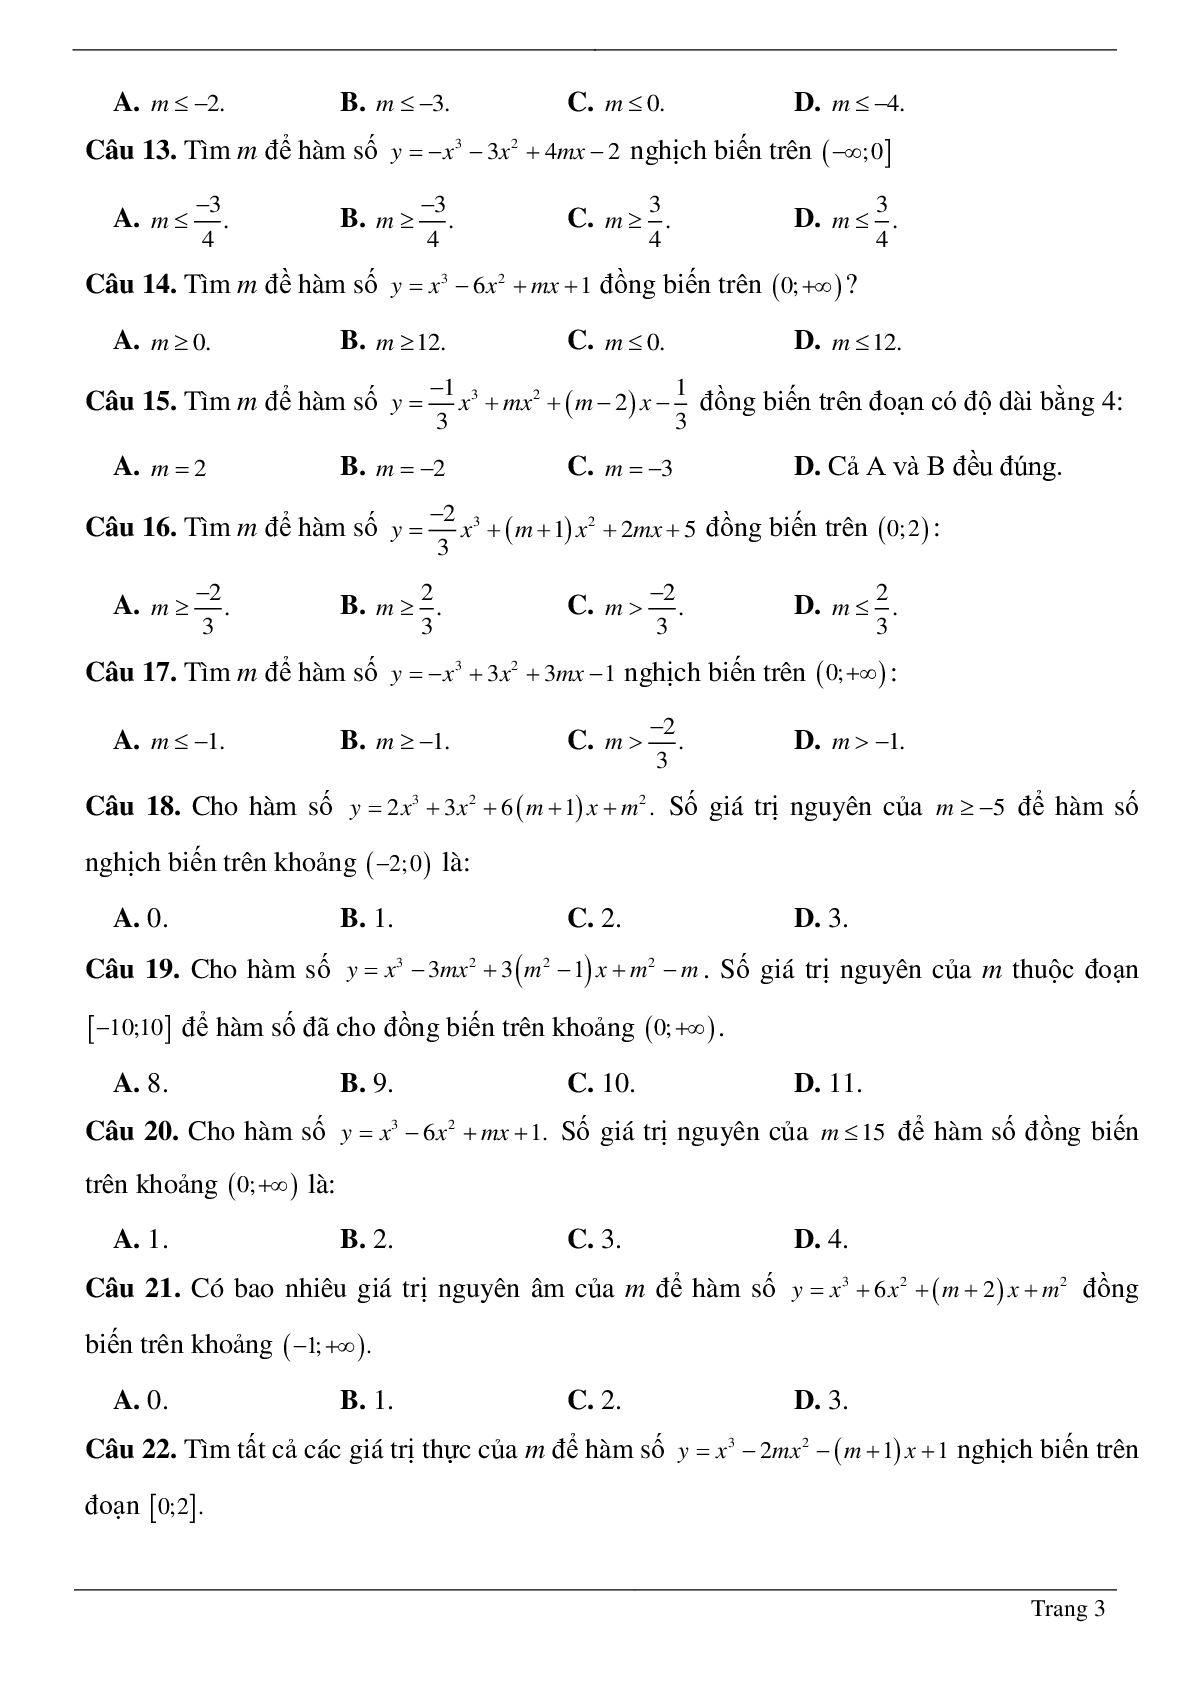 Tìm tham số M để hàm số bậc ba đồng biến, nghịch biến trên khoảng K cho trước (trang 3)